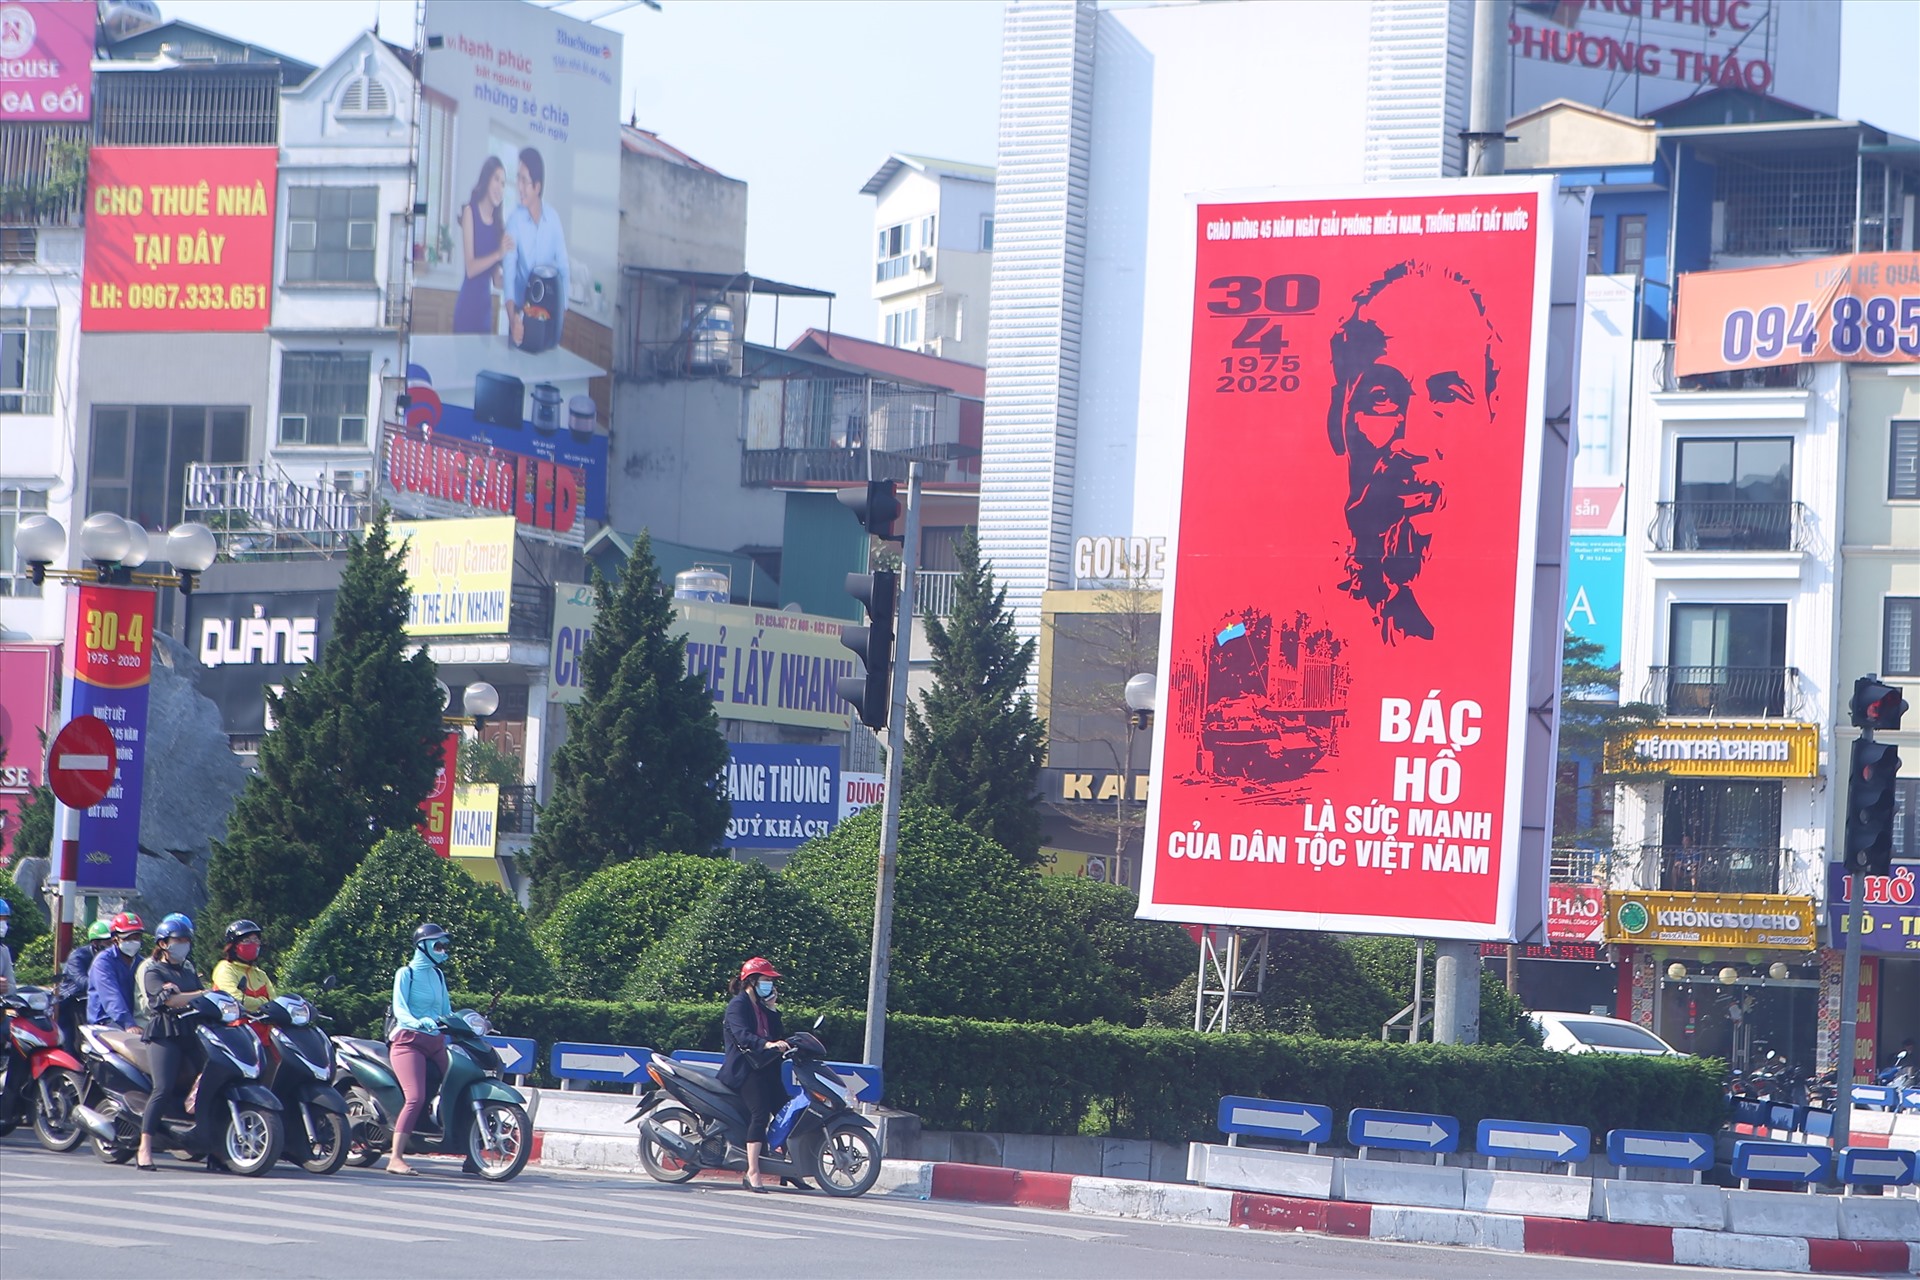 Kỉ niệm ngày chiến thắng 30.4 cũng gần với ngày sinh của Chủ tịch Hồ Chí Minh nên không thể thiếu được hình ảnh về Bác Hồ. Một tấm áp phích về Bác trên ngã 6 Ô Chợ Dừa (quận Đống Đa).